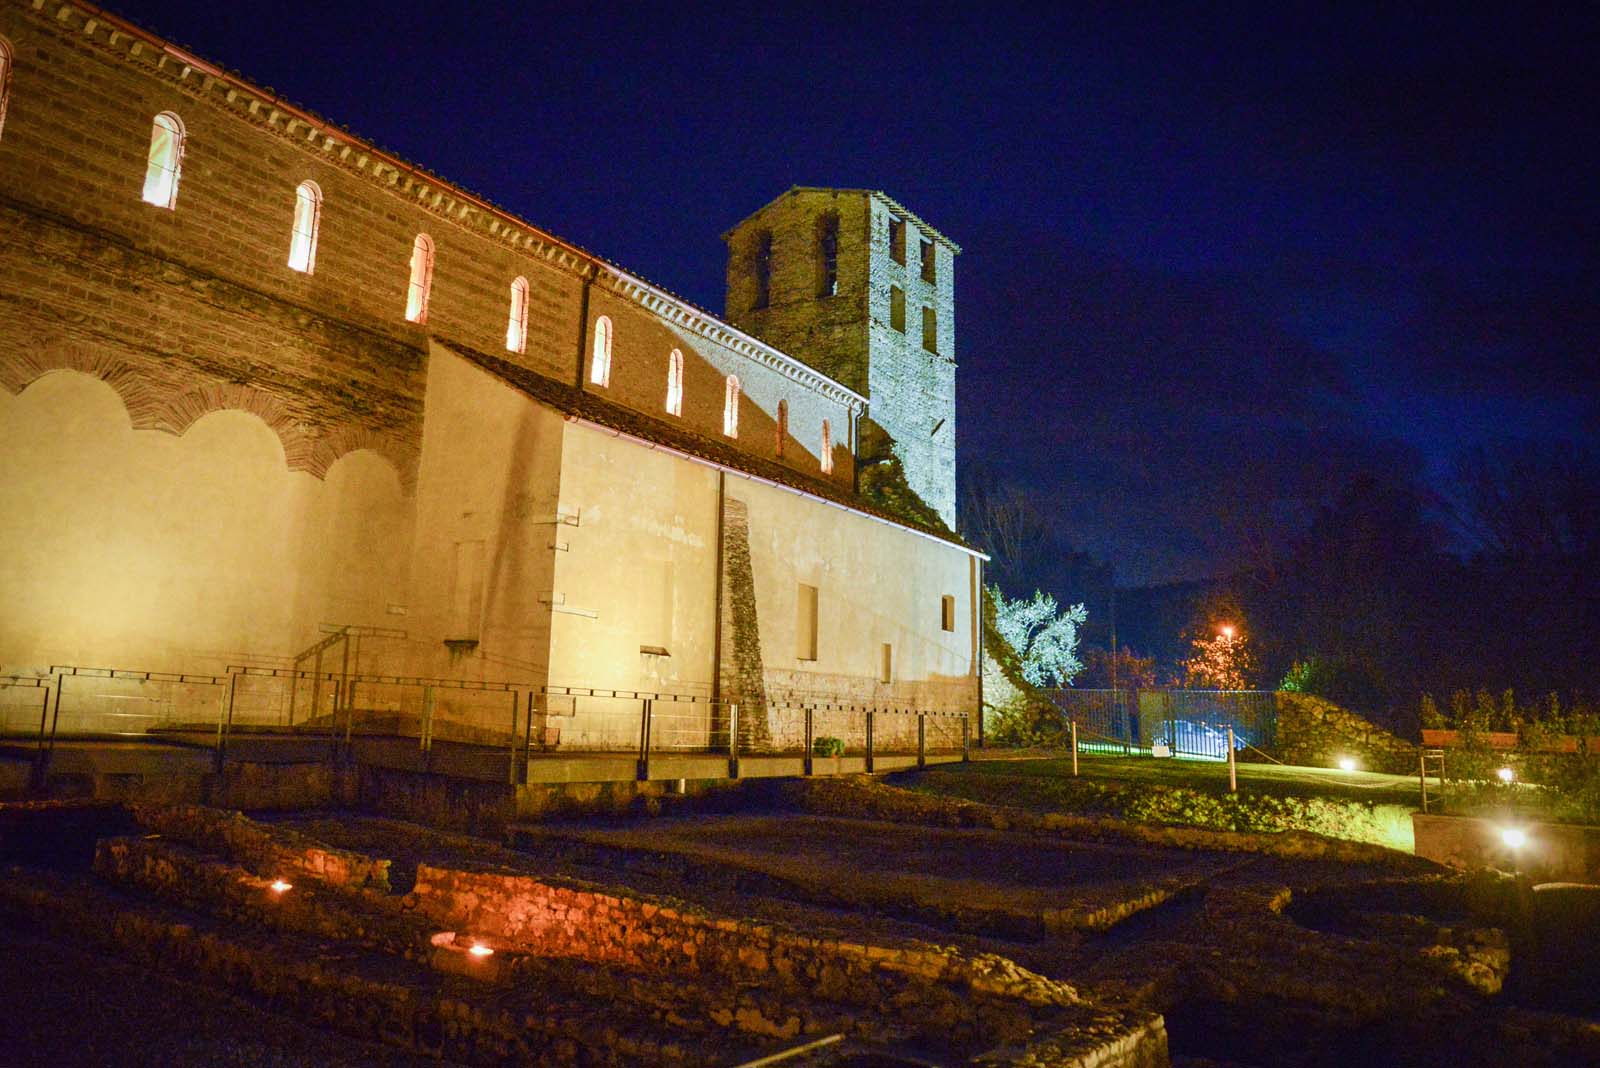 l'abbazia illuminata di notte